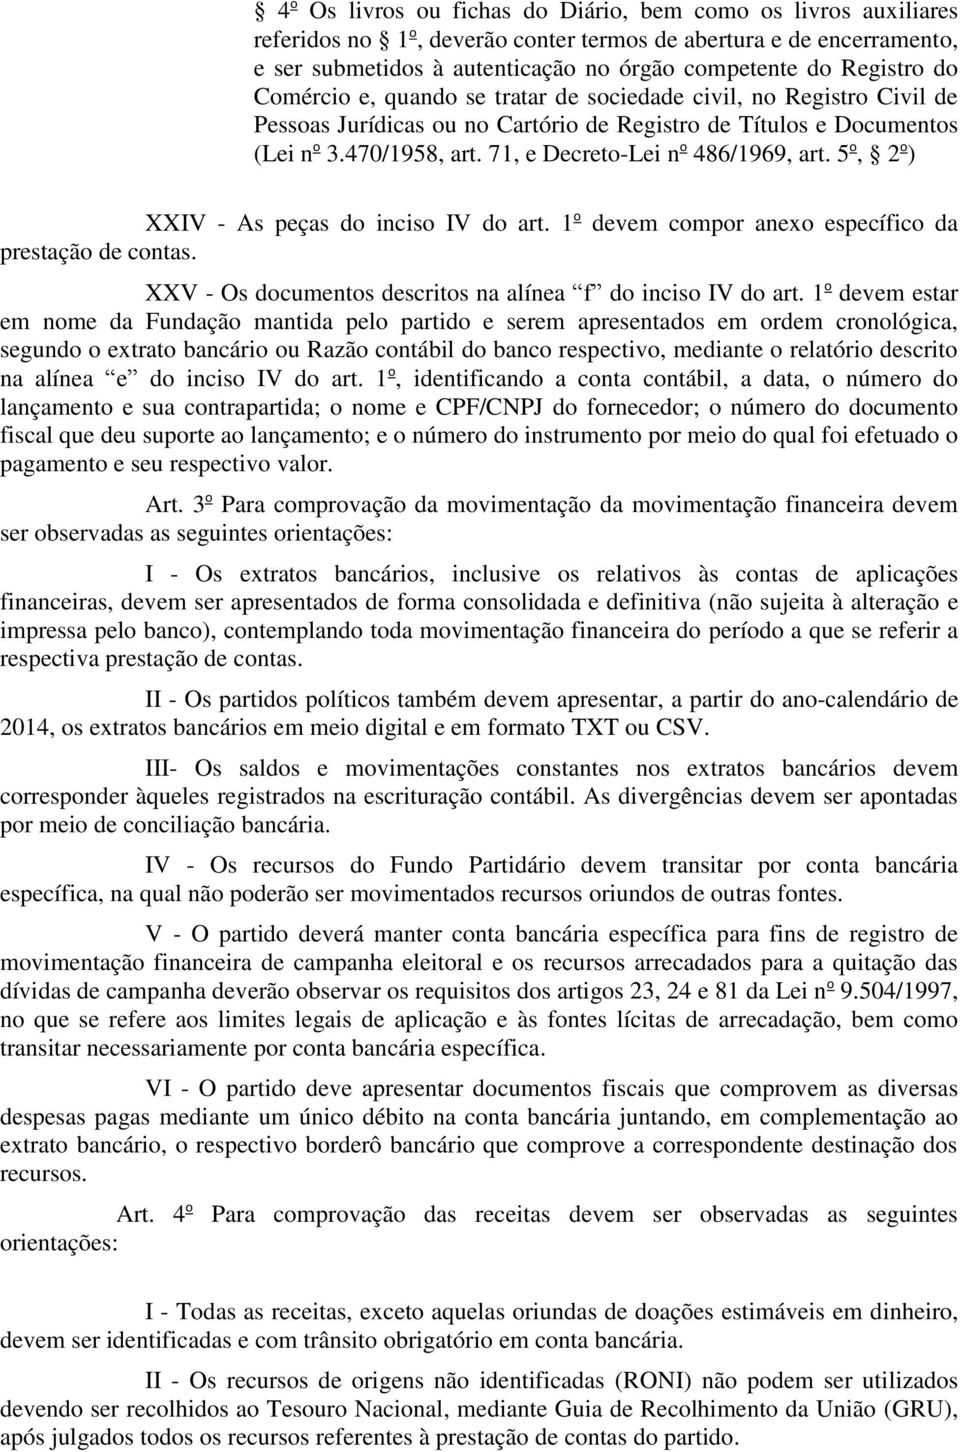 71, e Decreto-Lei n o 486/1969, art. 5 o, 2 o ) XXIV - As peças do inciso IV do art. 1 o devem compor anexo específico da prestação de contas.